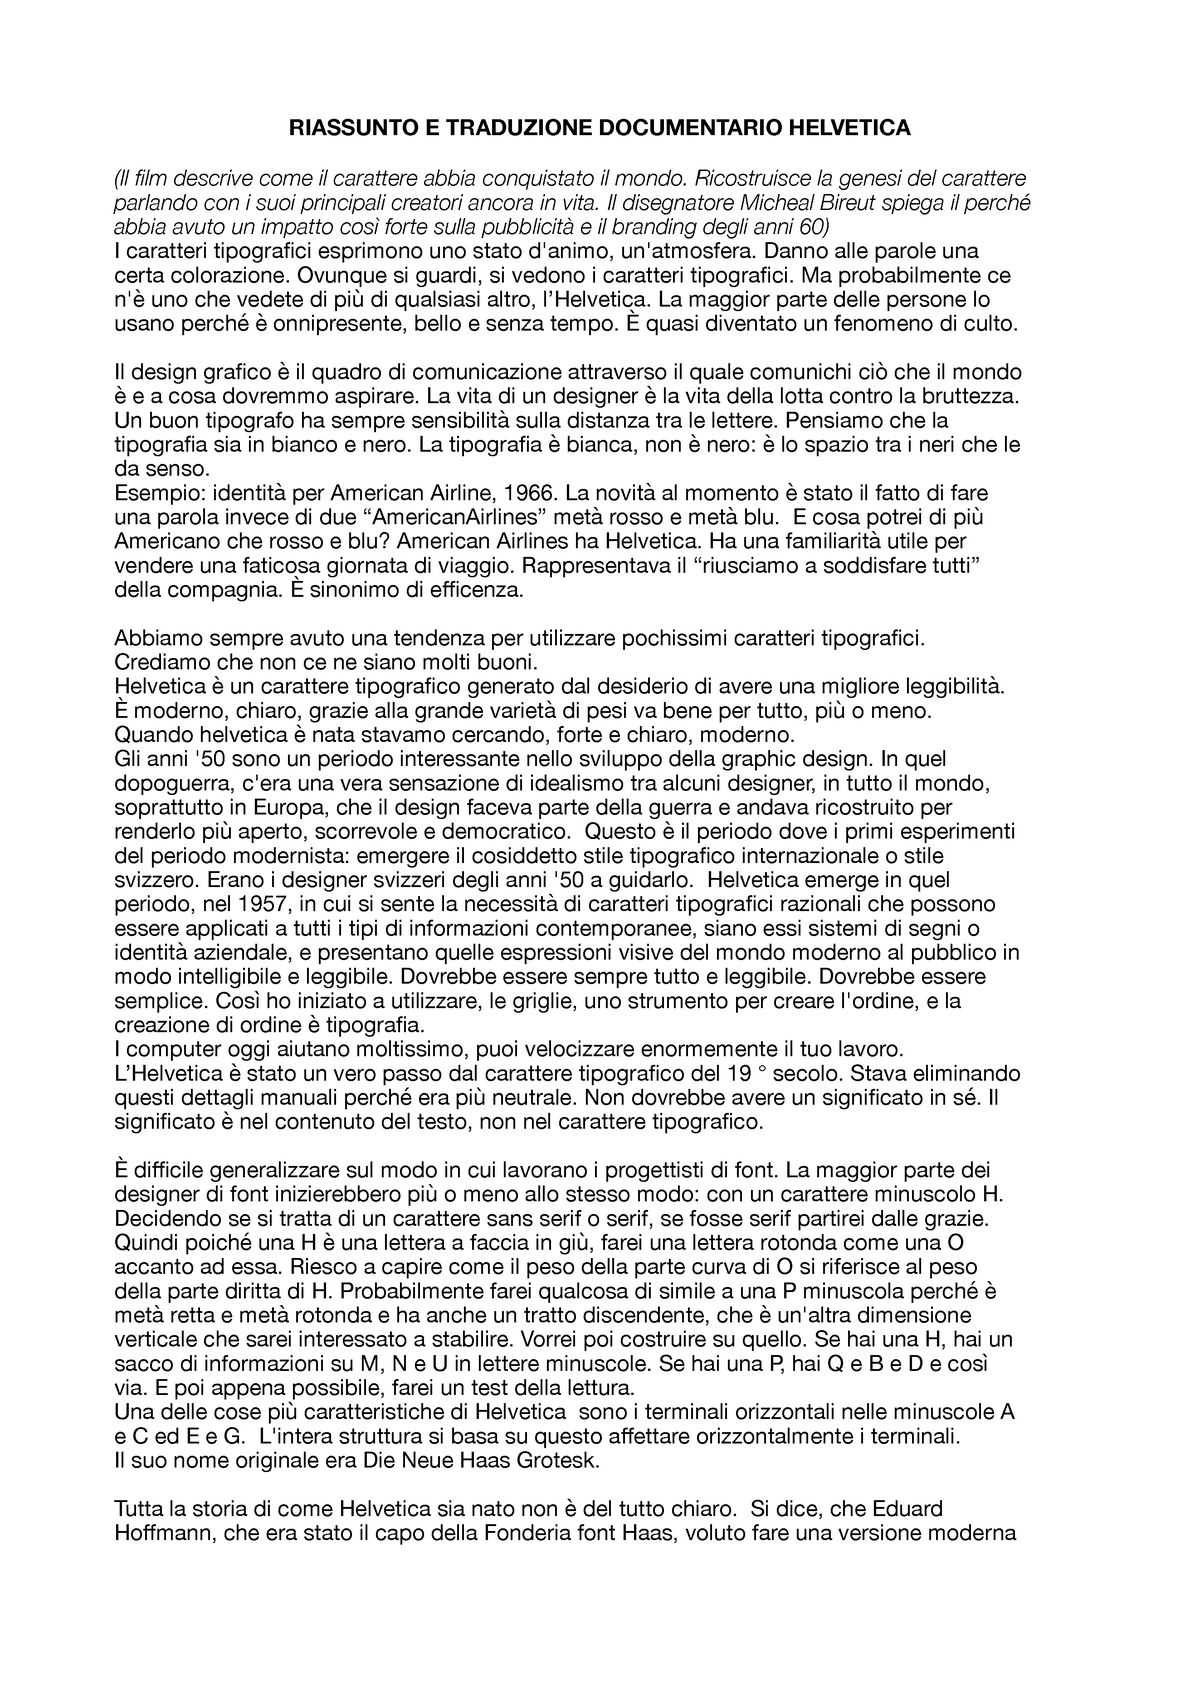 Documentario  Helvetica riassunto e traduzione - RIASSUNTO E TRADUZIONE  DOCUMENTARIO HELVETICA (Il - Studocu